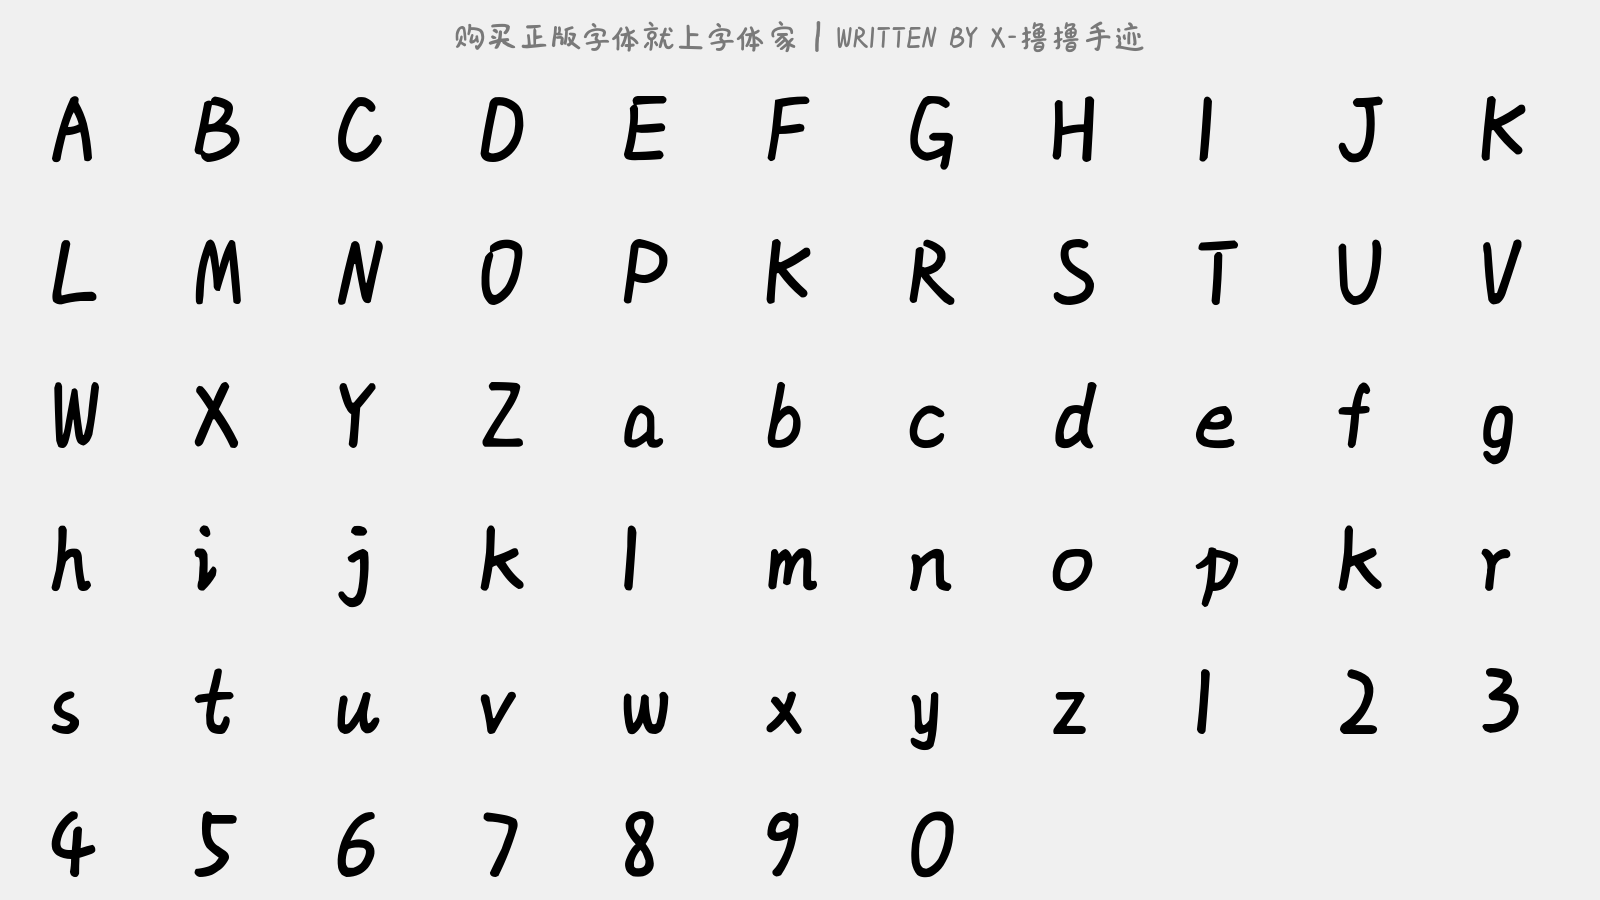 X-撸撸手迹 - 大写字母/小写字母/数字